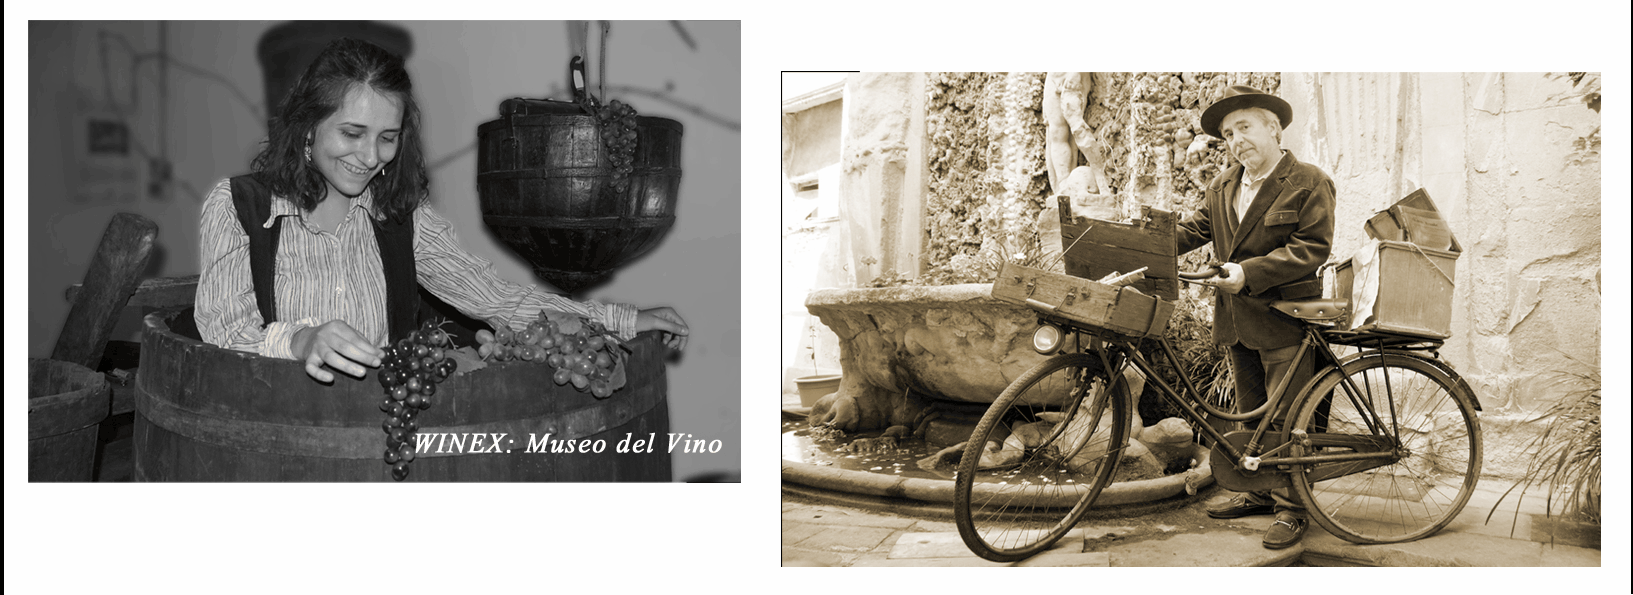 Winex, Museo del Vino, Daviddino, Cucina etrusca il vino di omero